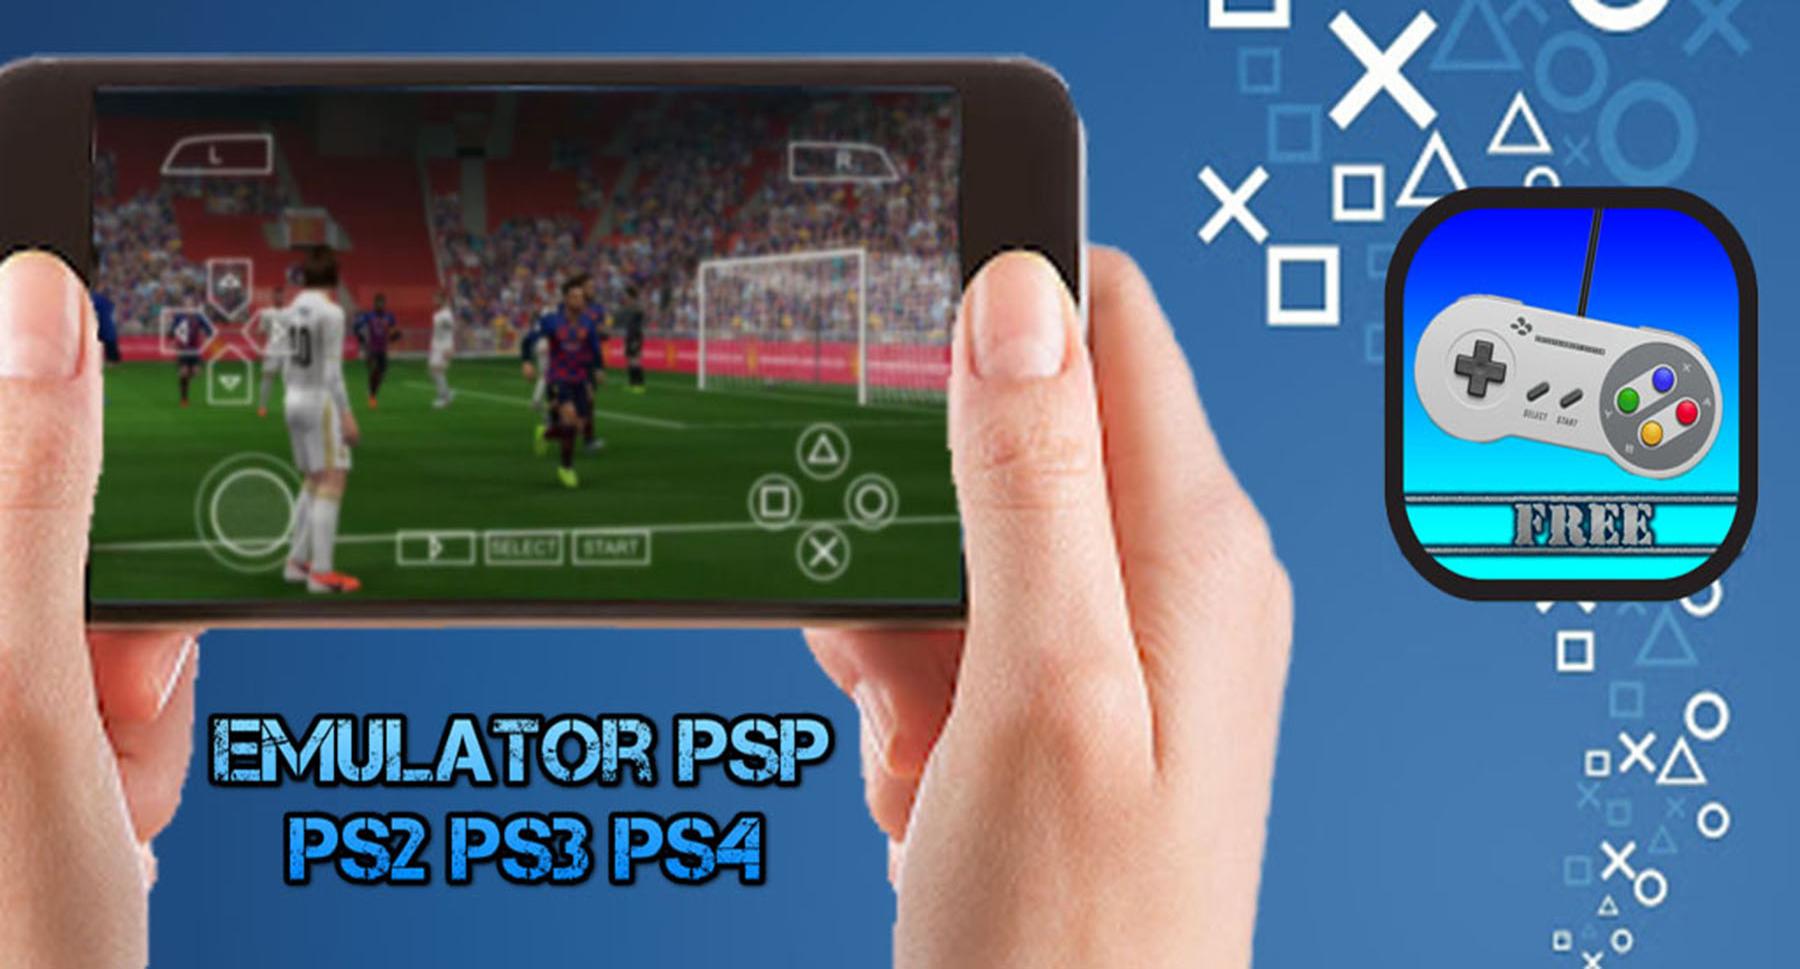 TÉLÉCHARGER ET JOUER: Emulateur PSP PS2 PS3 PS4 pour Android - Téléchargez  l'APK